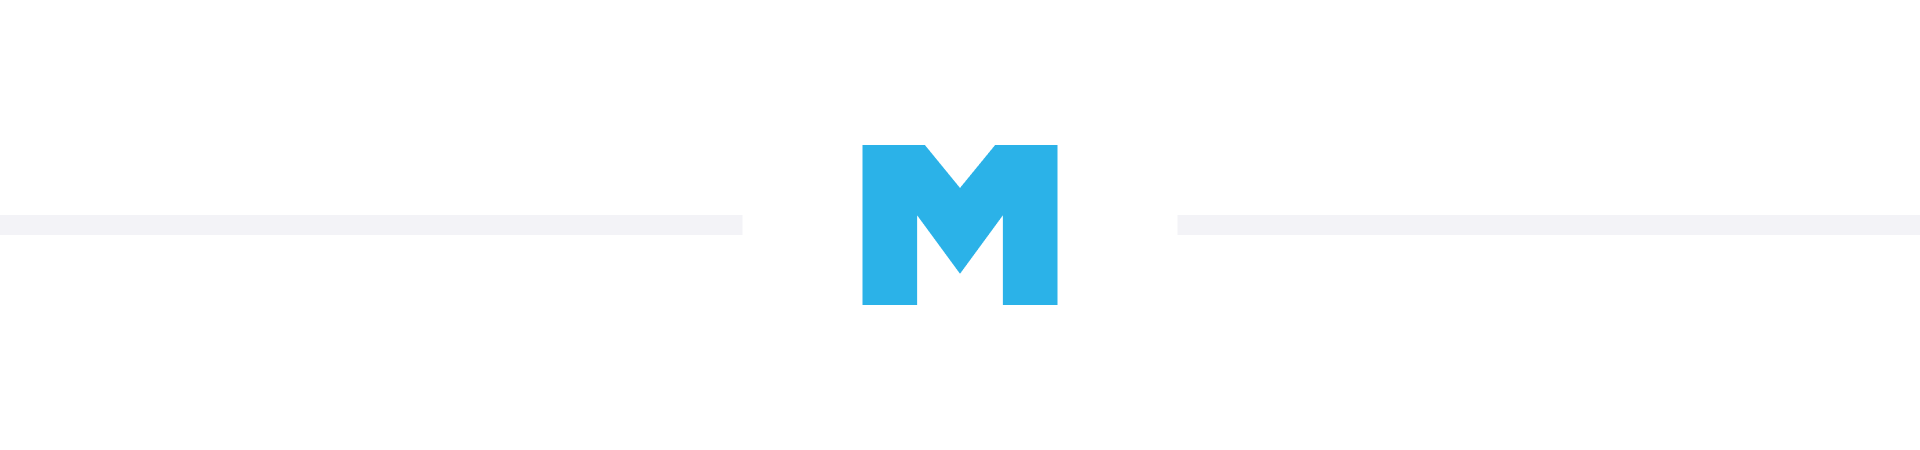 Blue Mailster logo